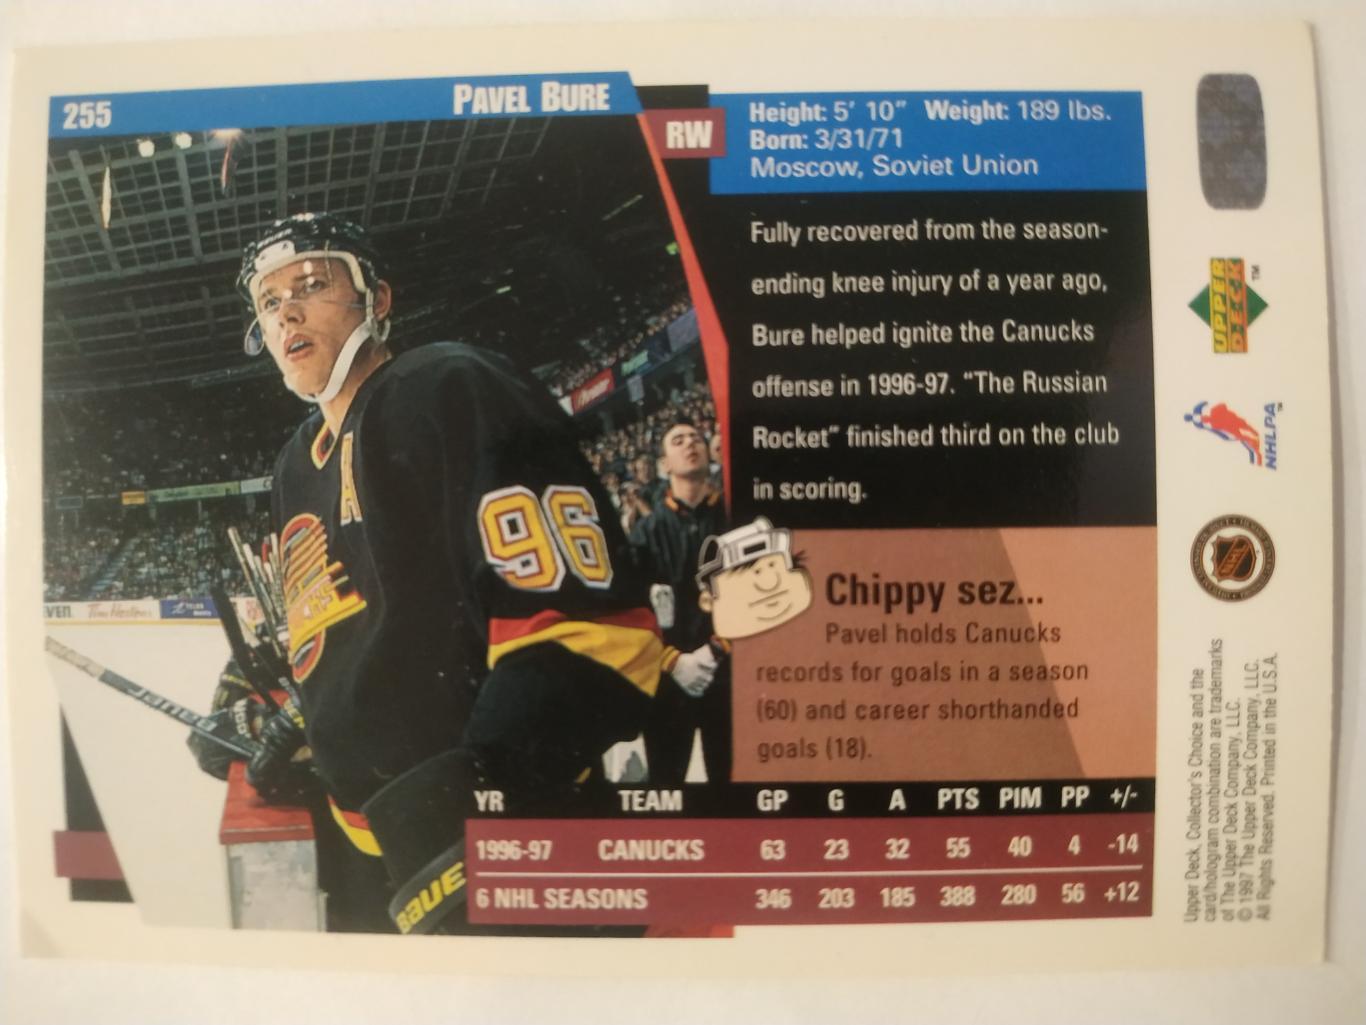 ХОККЕЙ КАРТОЧКА НХЛ UPPER DECK 1997-98 NHL PAVEL BURE VANCOUVER CANUCKS #255 1